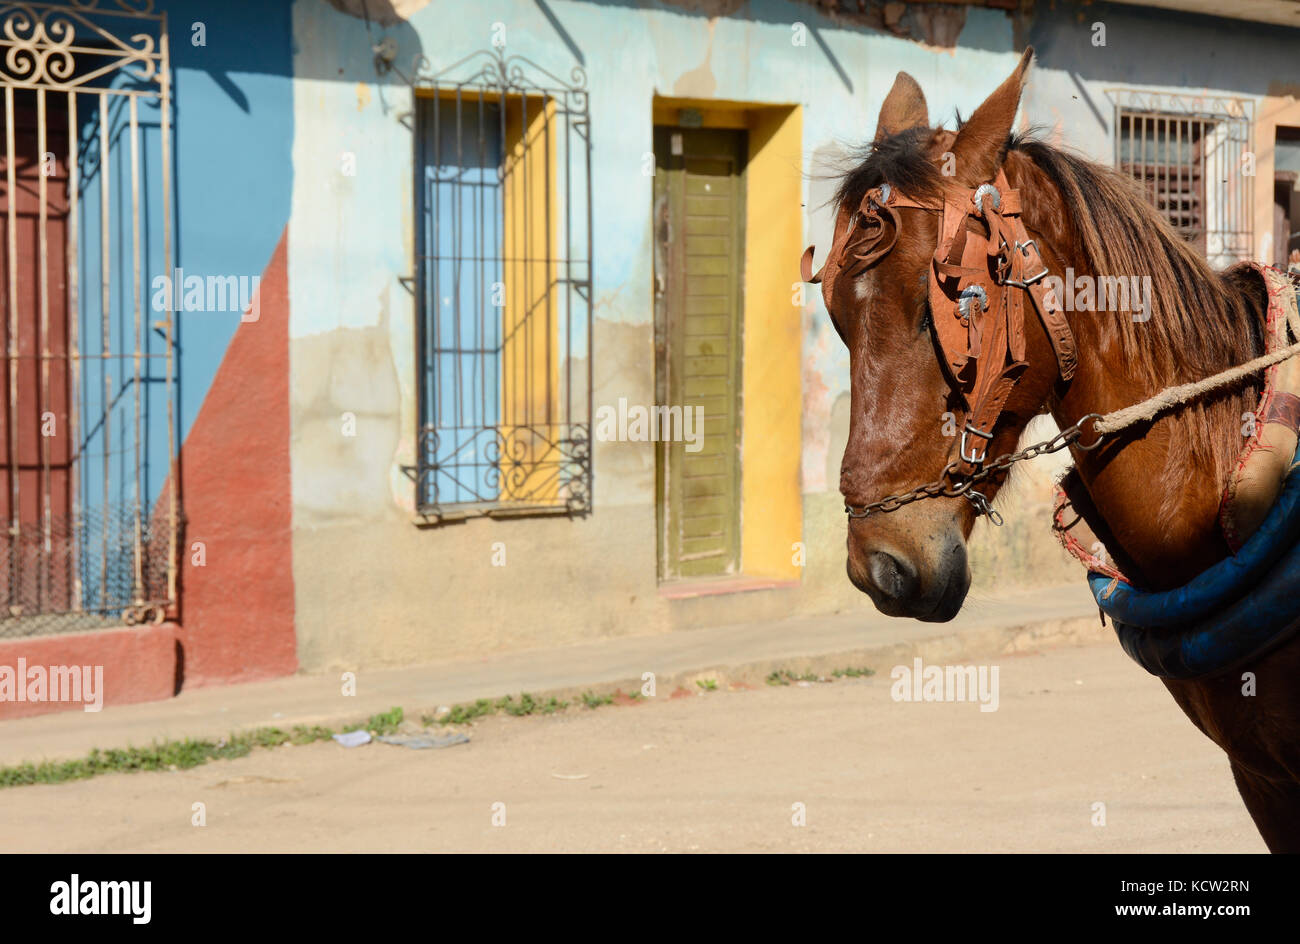 Pferd und bunten home Fronten, Trinidad, Kuba Stockfoto